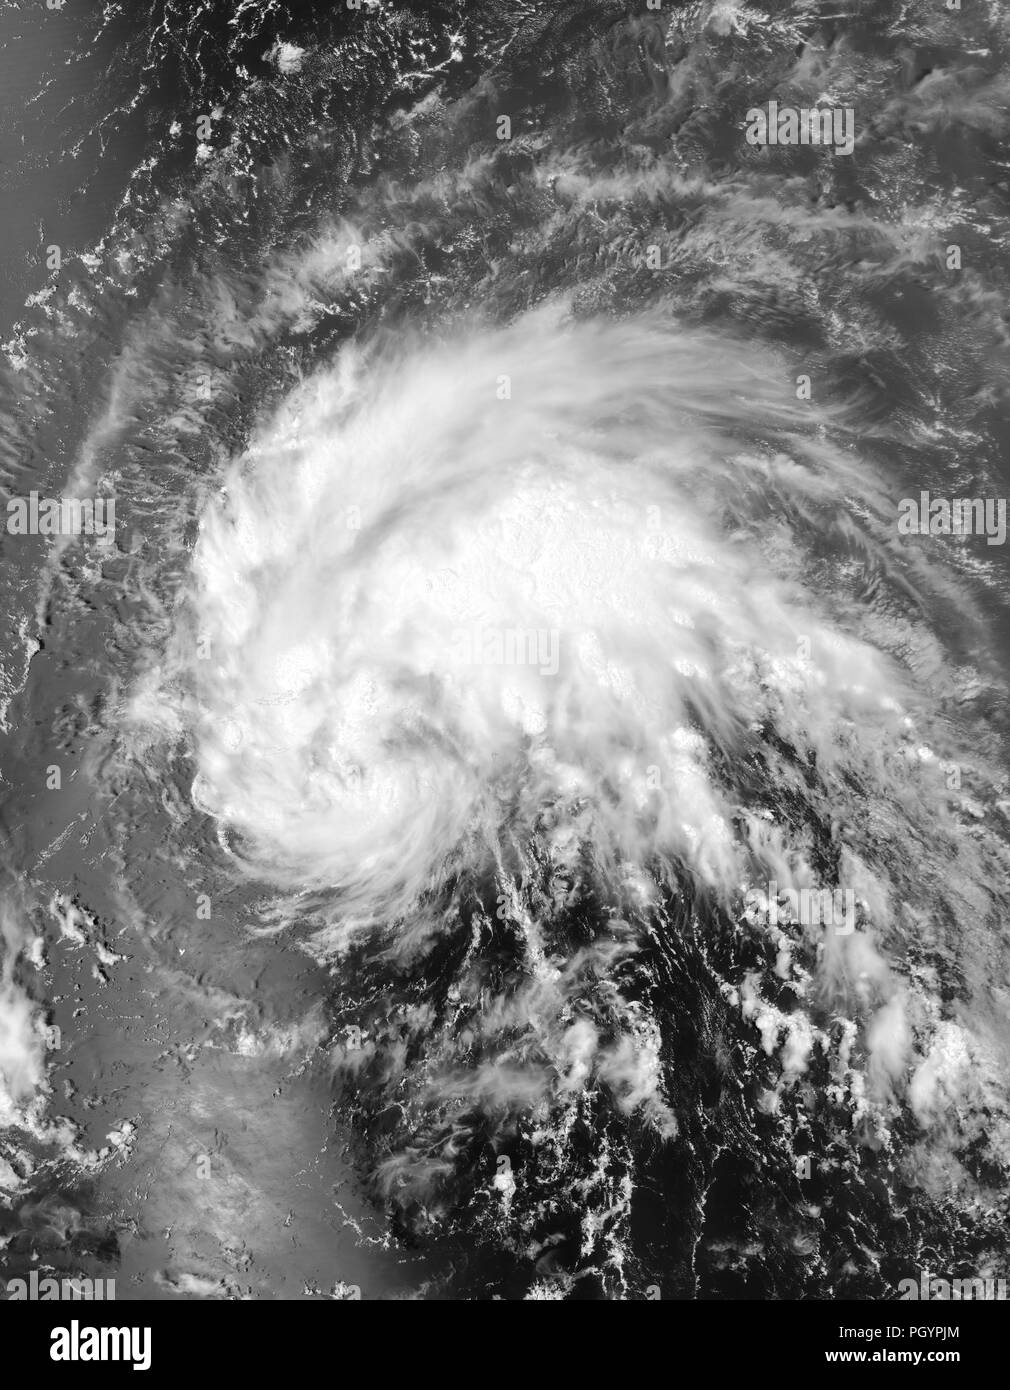 La tempête tropicale Irene près de Puerto Rico, prises à partir de la NASA Le satellite Aqua, 2011. Image Courtesy NASA Goddard MODIS Rapid Response Team. () Banque D'Images